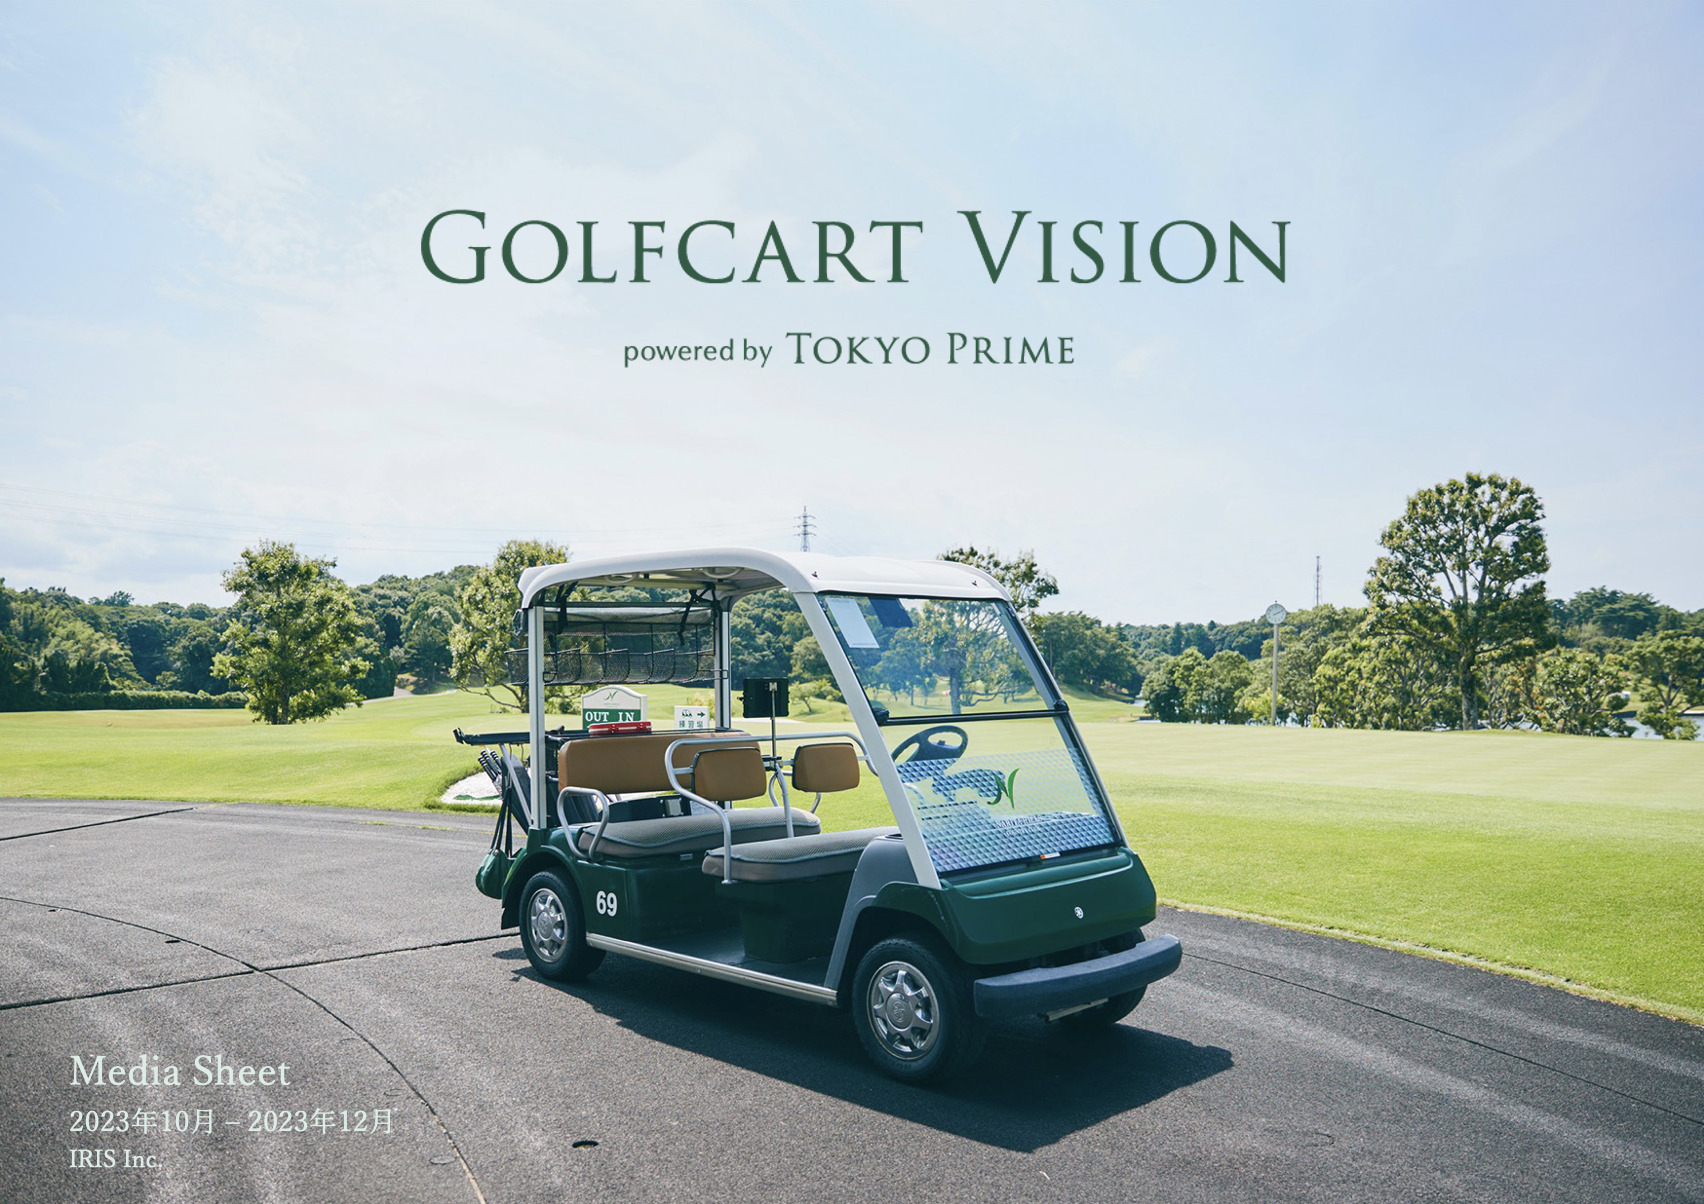 ゴルフカートサイネージメディア「Golfcart Vision®︎」、 P G M系列ゴルフ場に導入決定！20ゴルフ場・1,200台に端末を大幅増設しリニューアル！ – 2023年10月-12月の媒体資料を公開 –